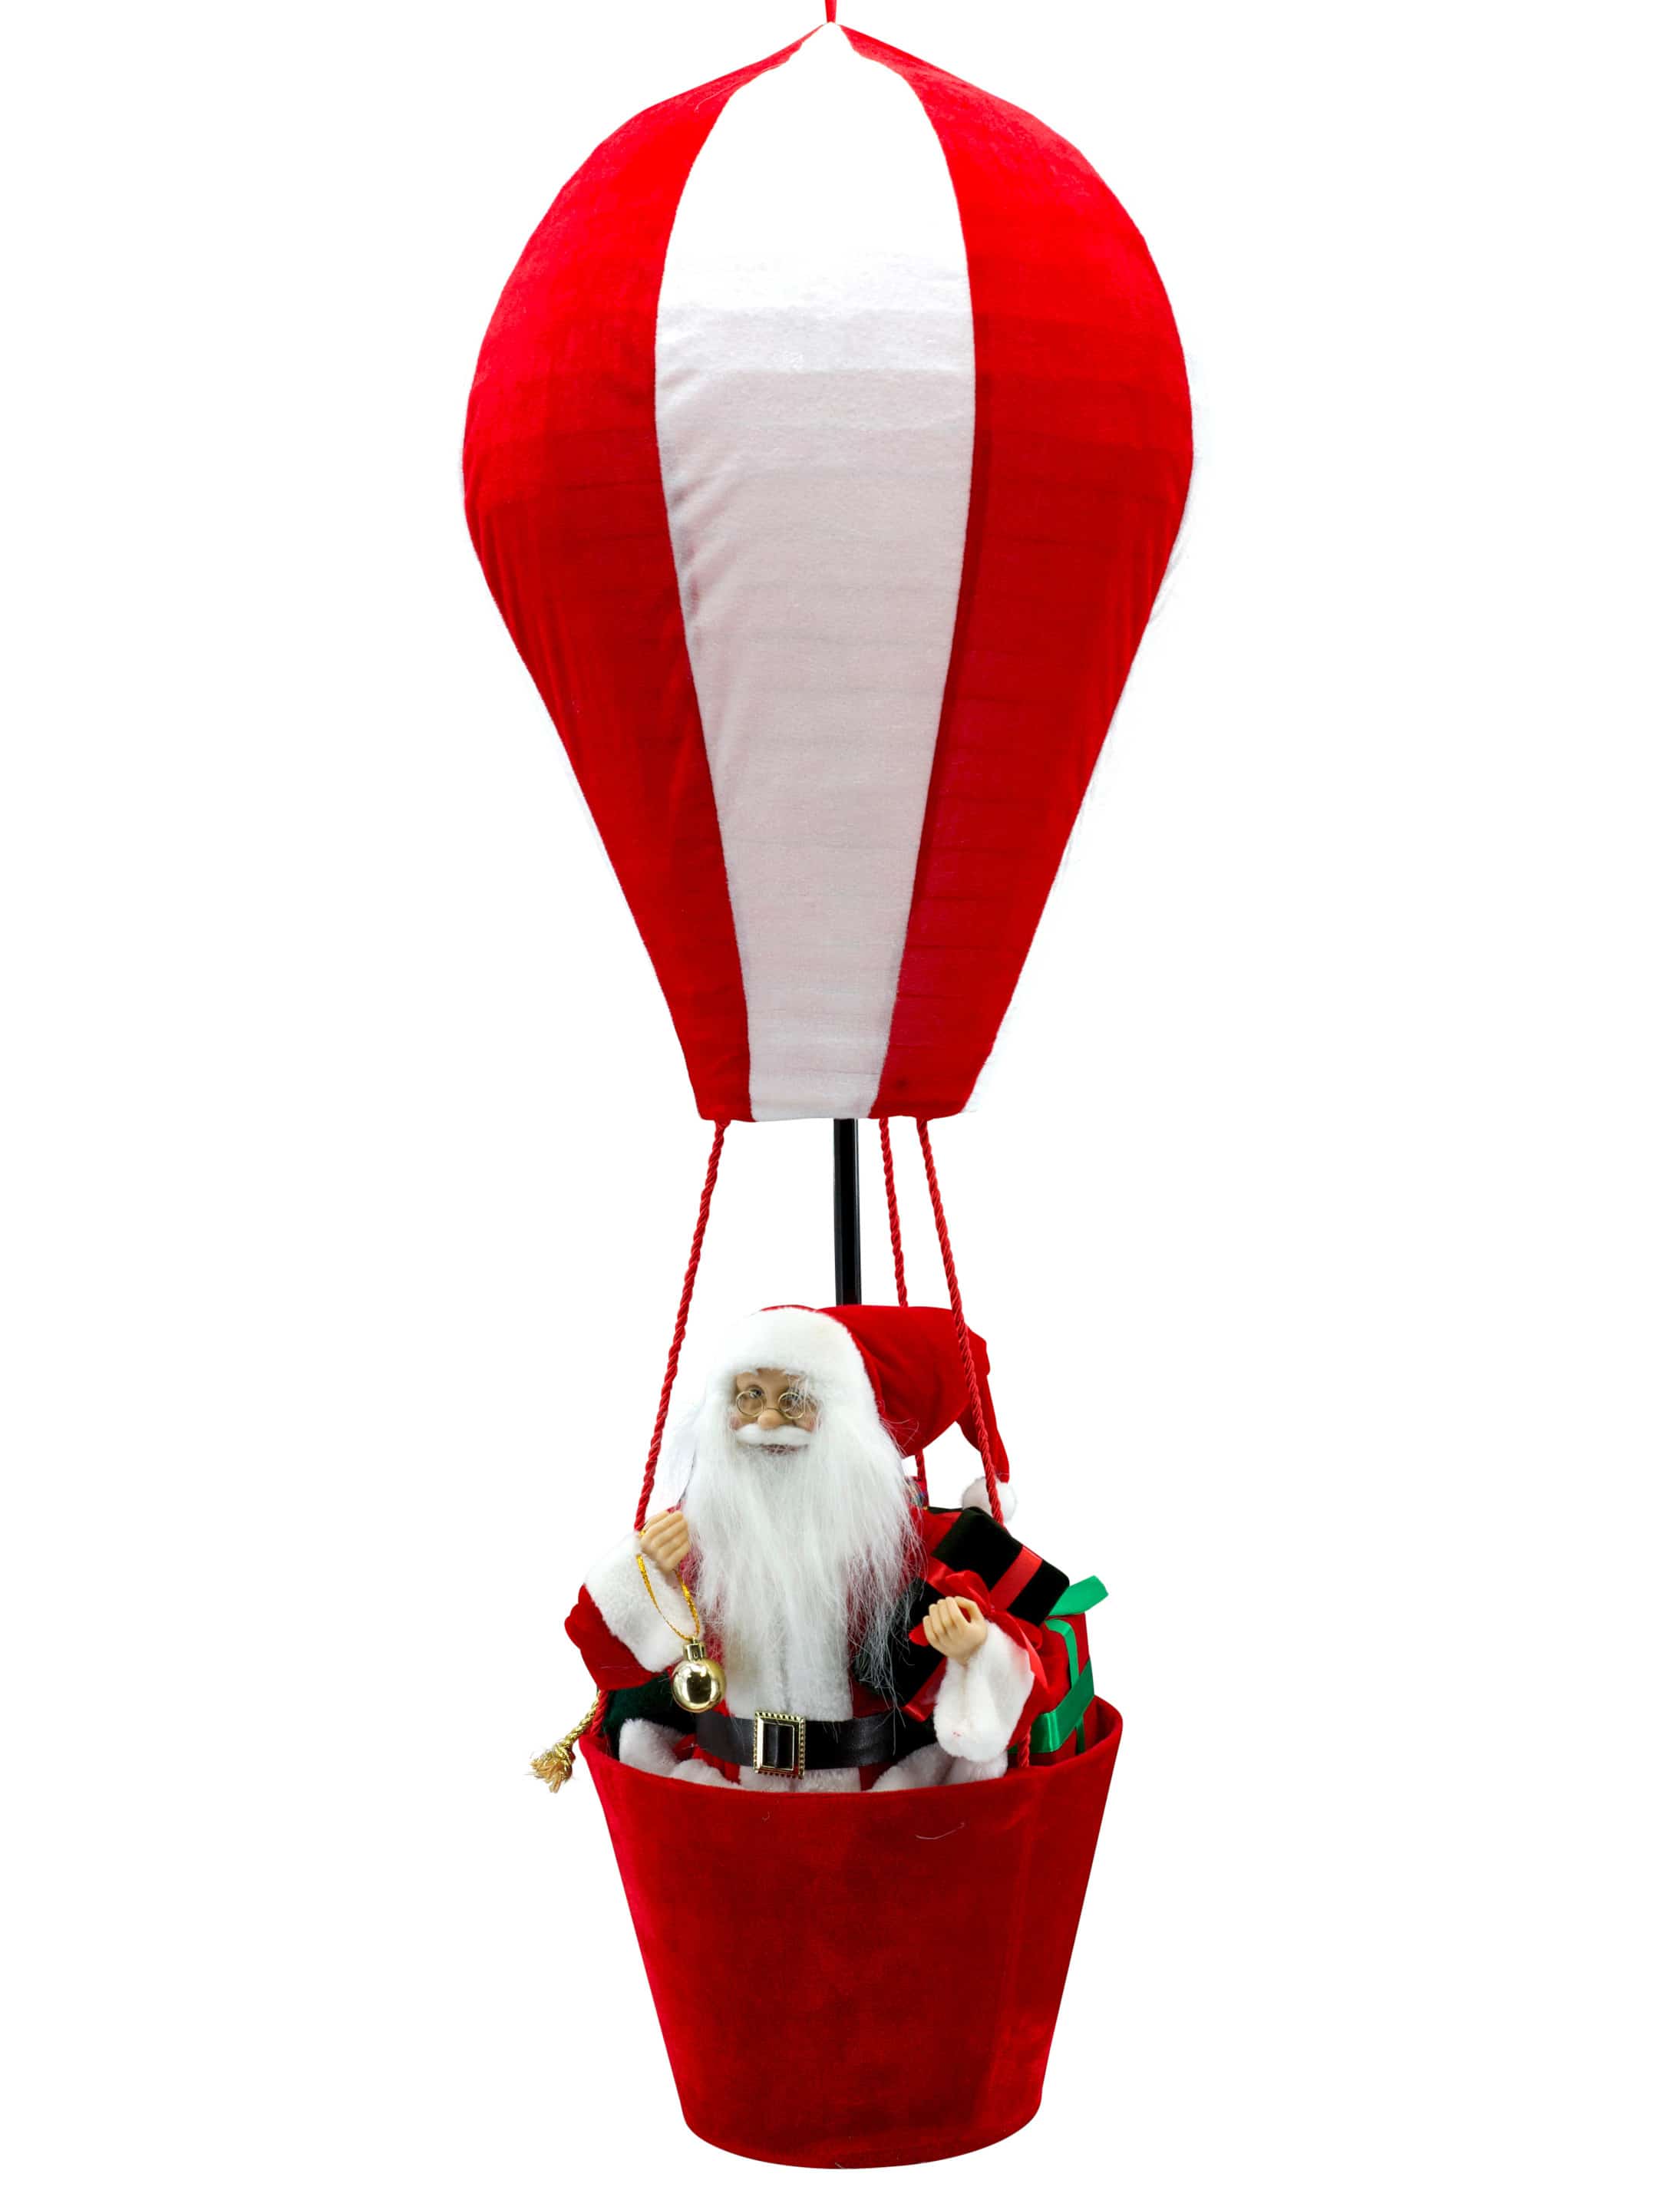 Weihnachtsmann im Heißluftballon